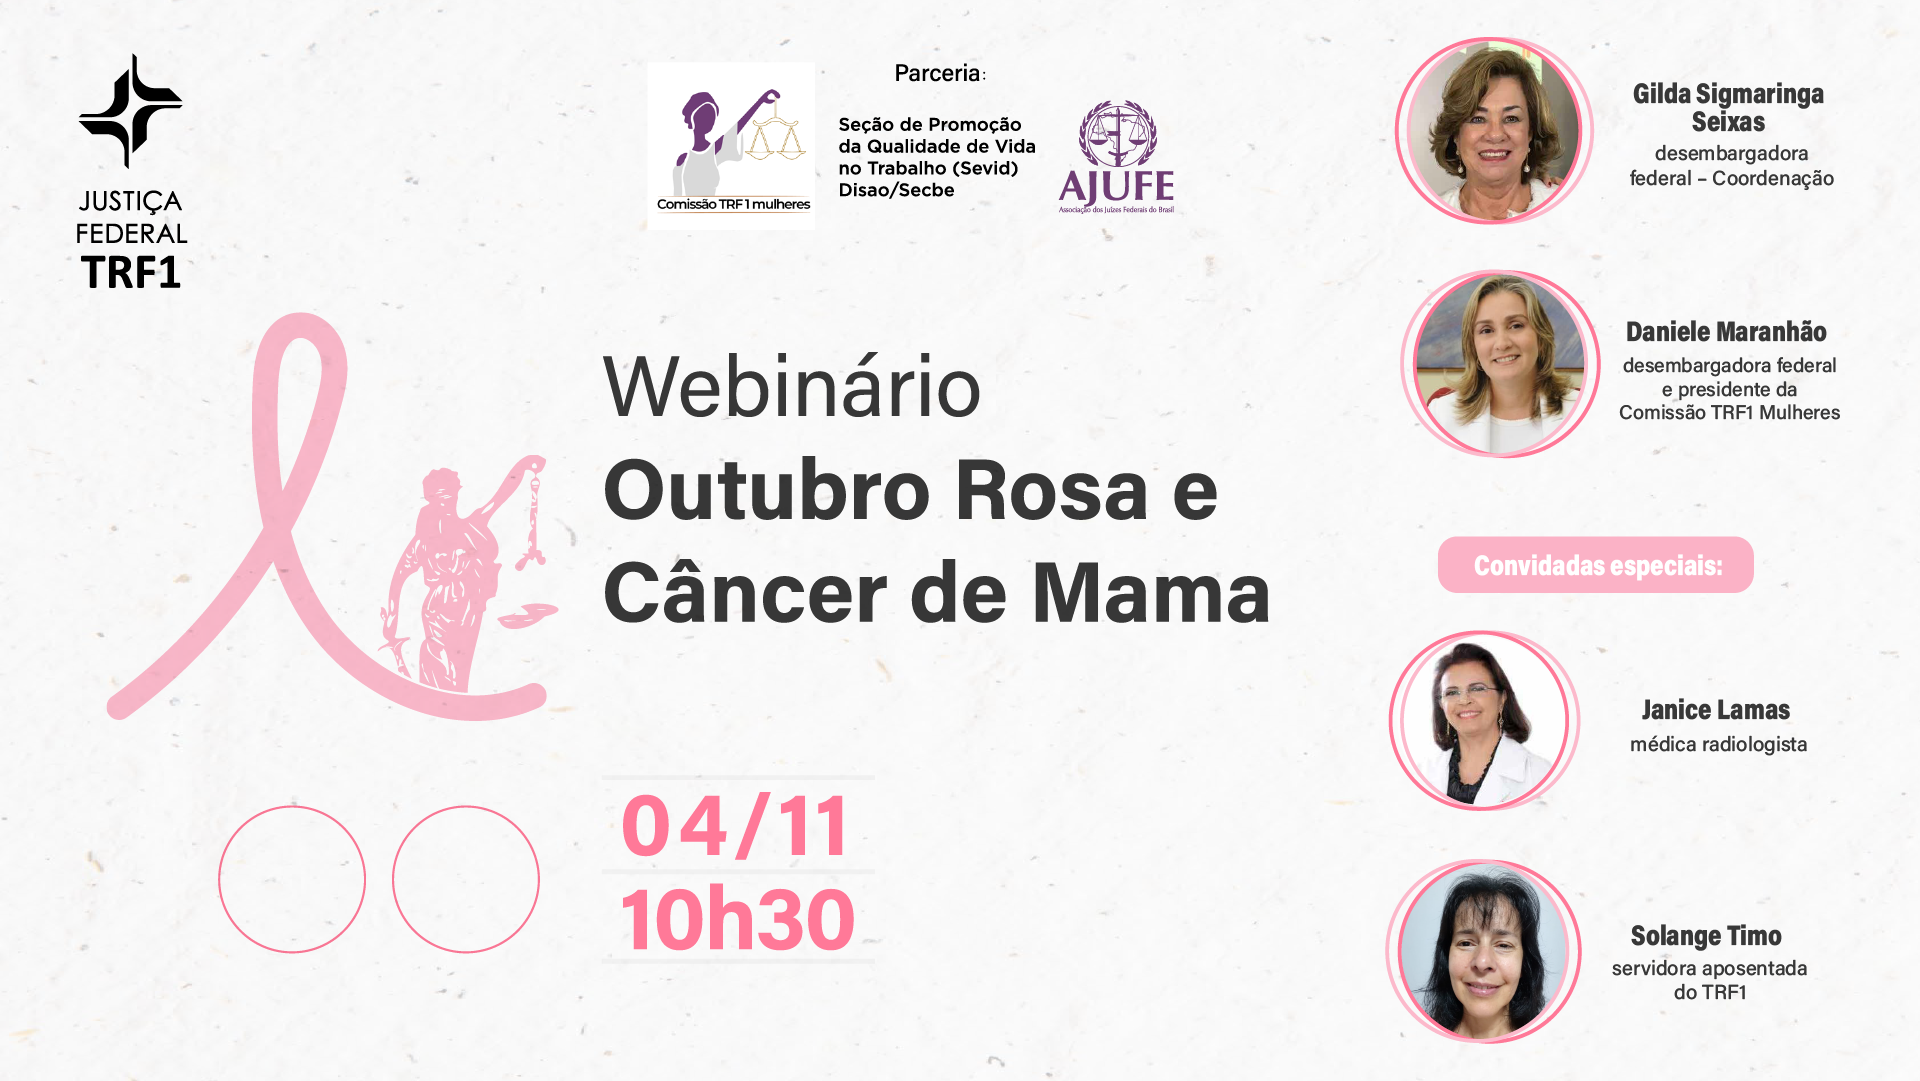 INSTITUCIONAL: Webinário sobre câncer de mama é nesta quarta-feira